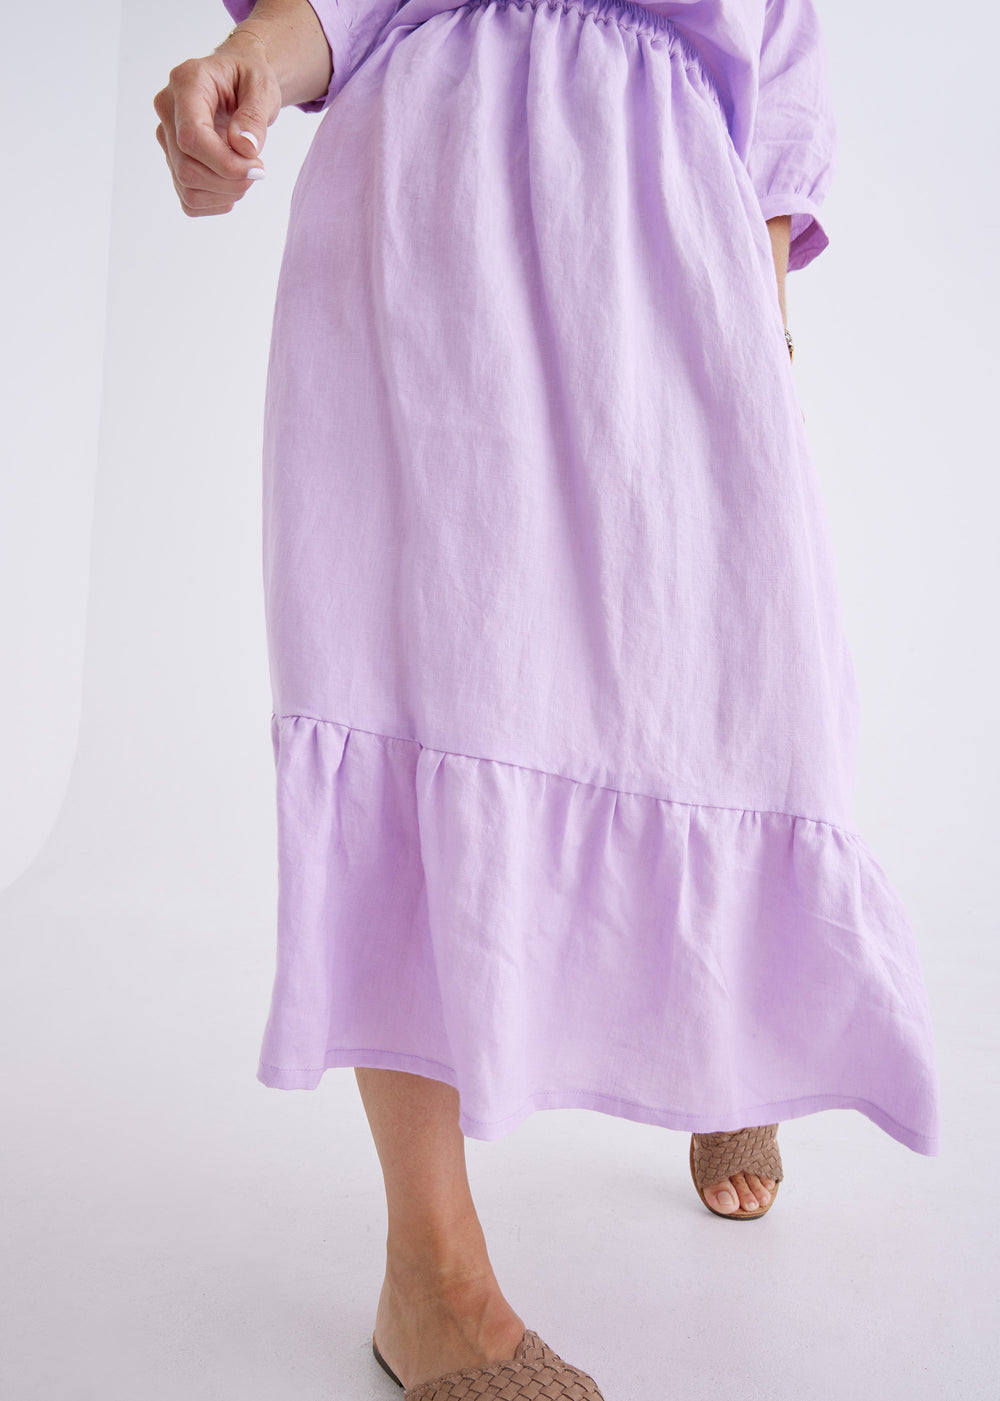 Luna Linen Skirt in Lilac